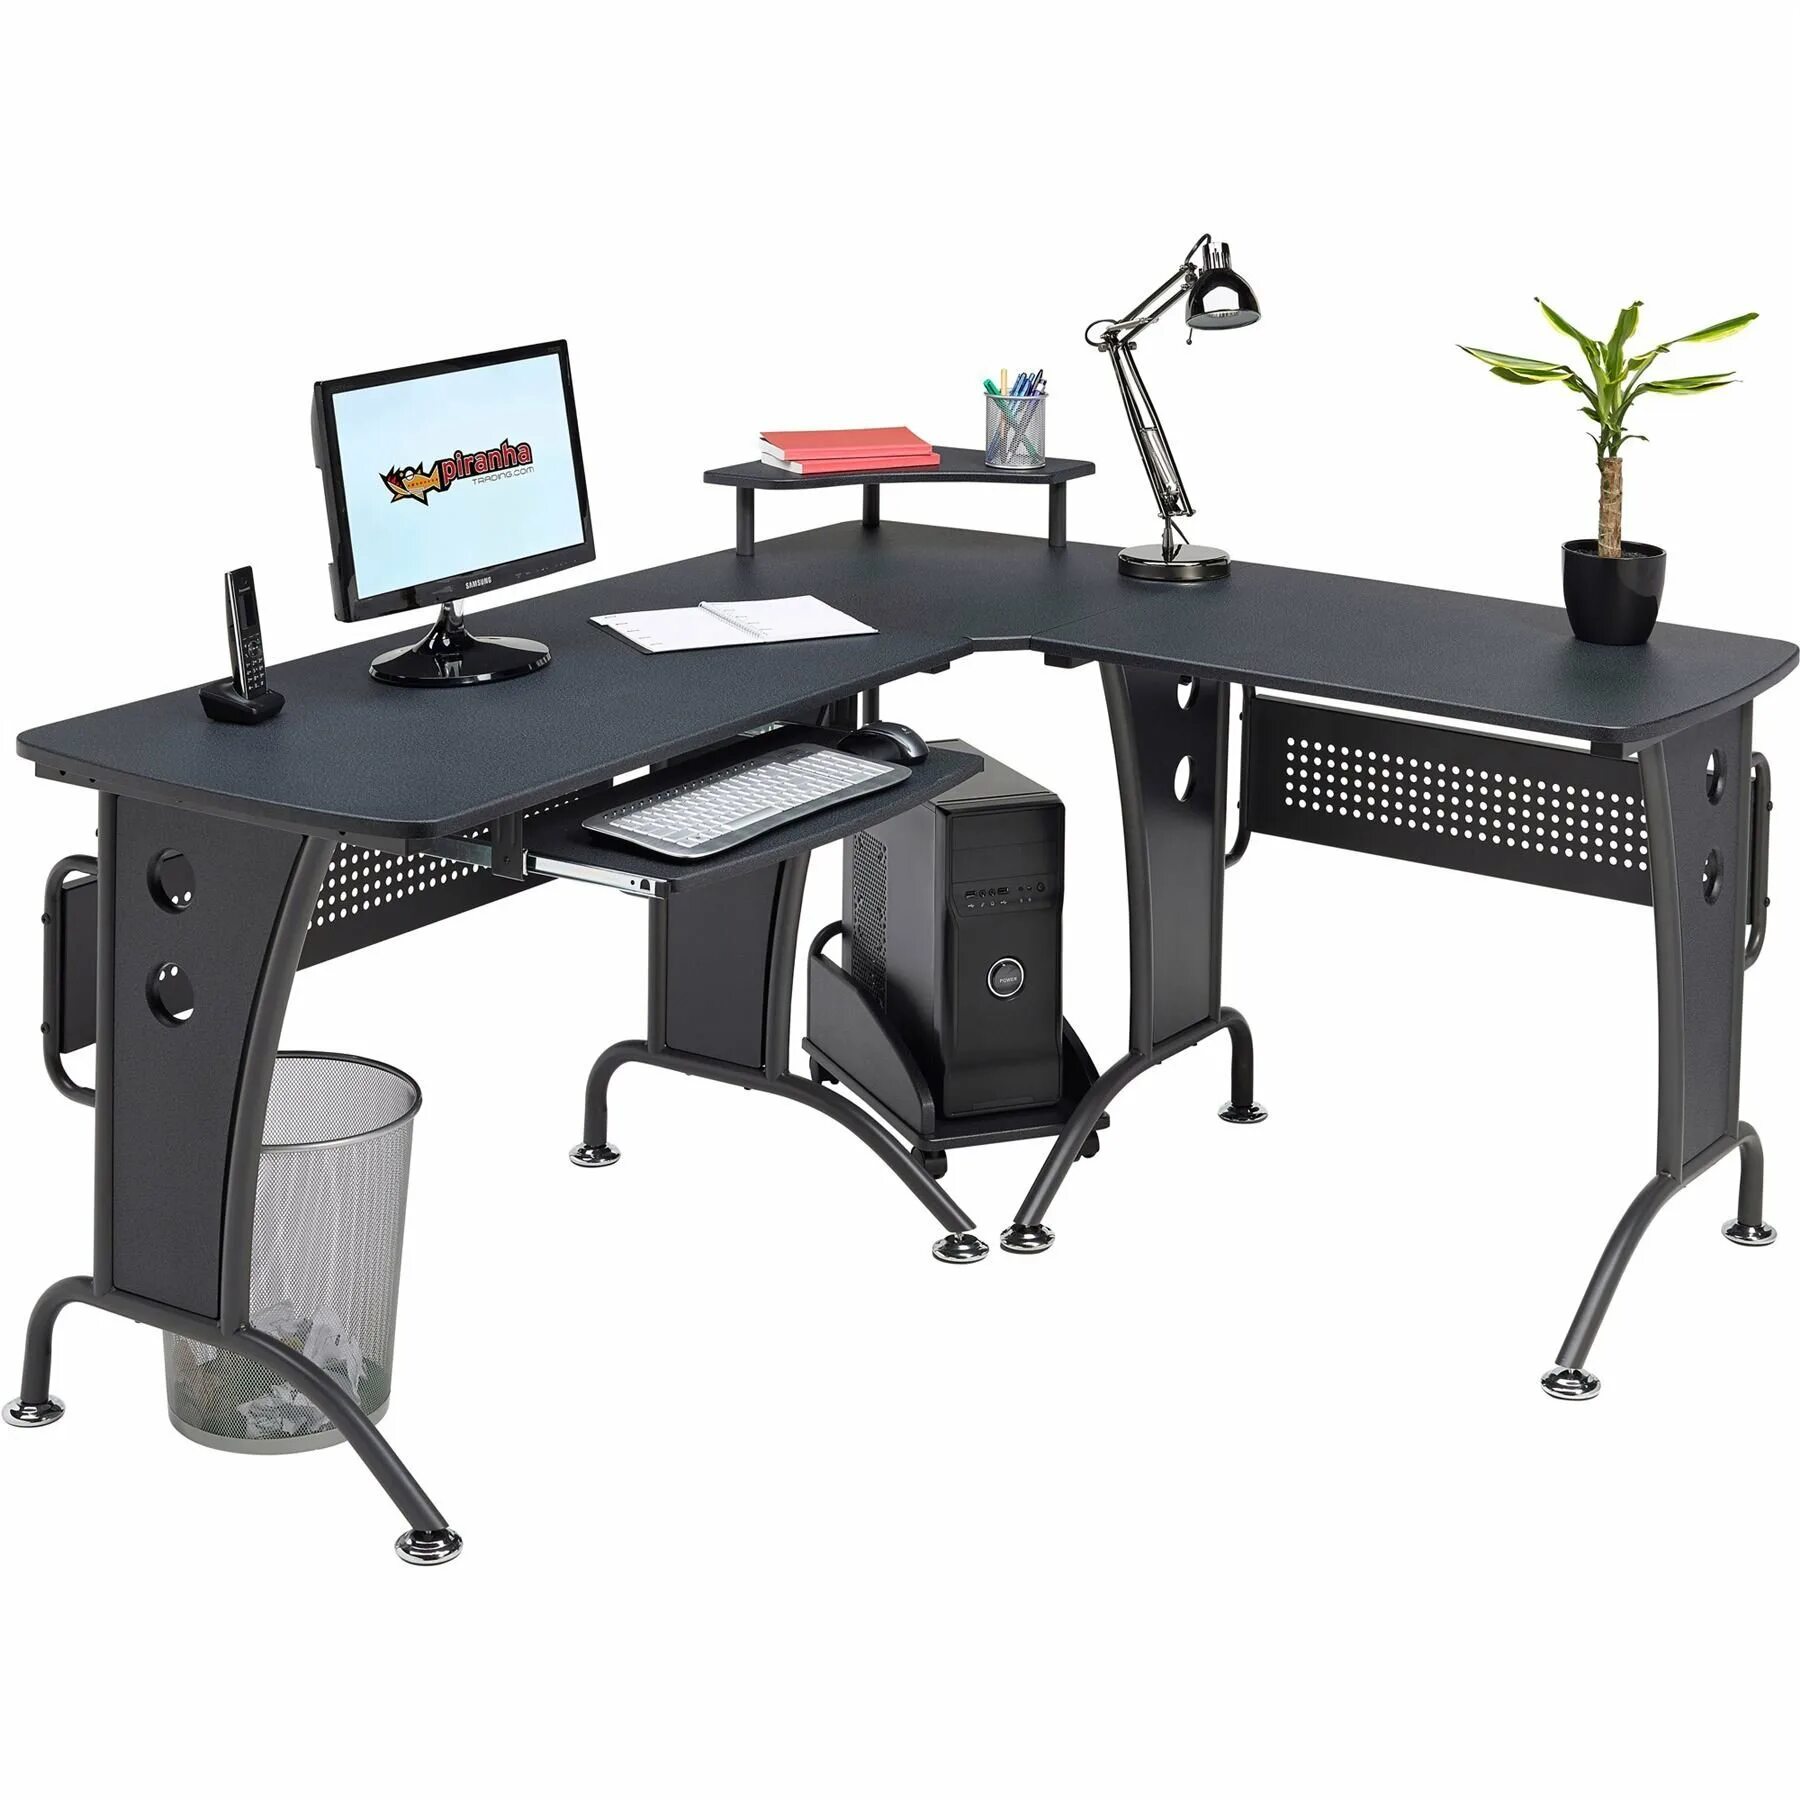 Компьютерный стол «Corner Desk». Игровой стол угловой Витал саппорт. QCT-2am Foldable Computer Desk. Компьютерный стол Континент пк11. Gaming corner